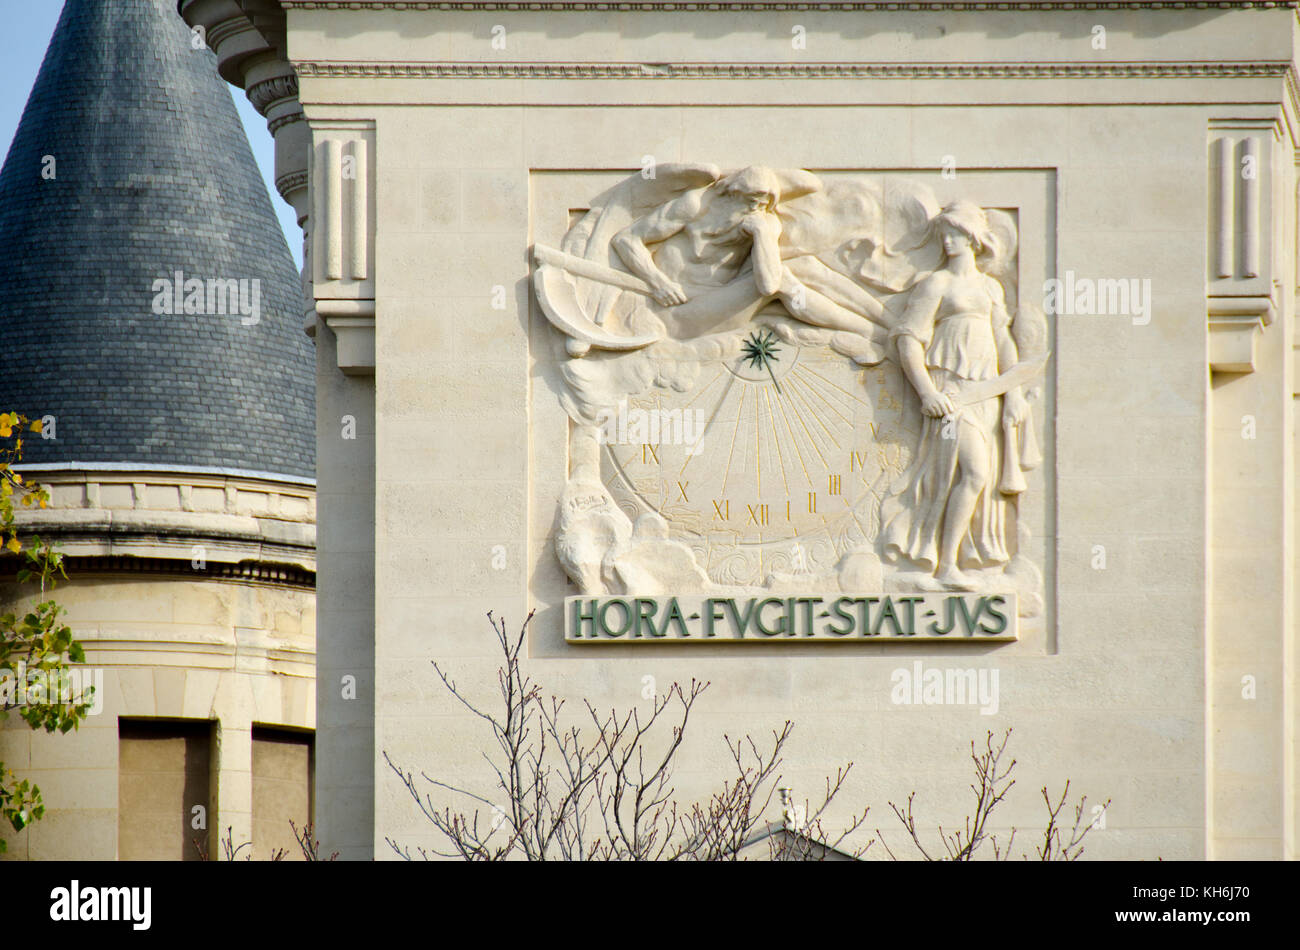 Paris, France. Sundial on the Palais de Justice, Quai des Orfevres, Isle de la Cite. (Hora fugit, stat jus - time passes, justice remains) .... Stock Photo